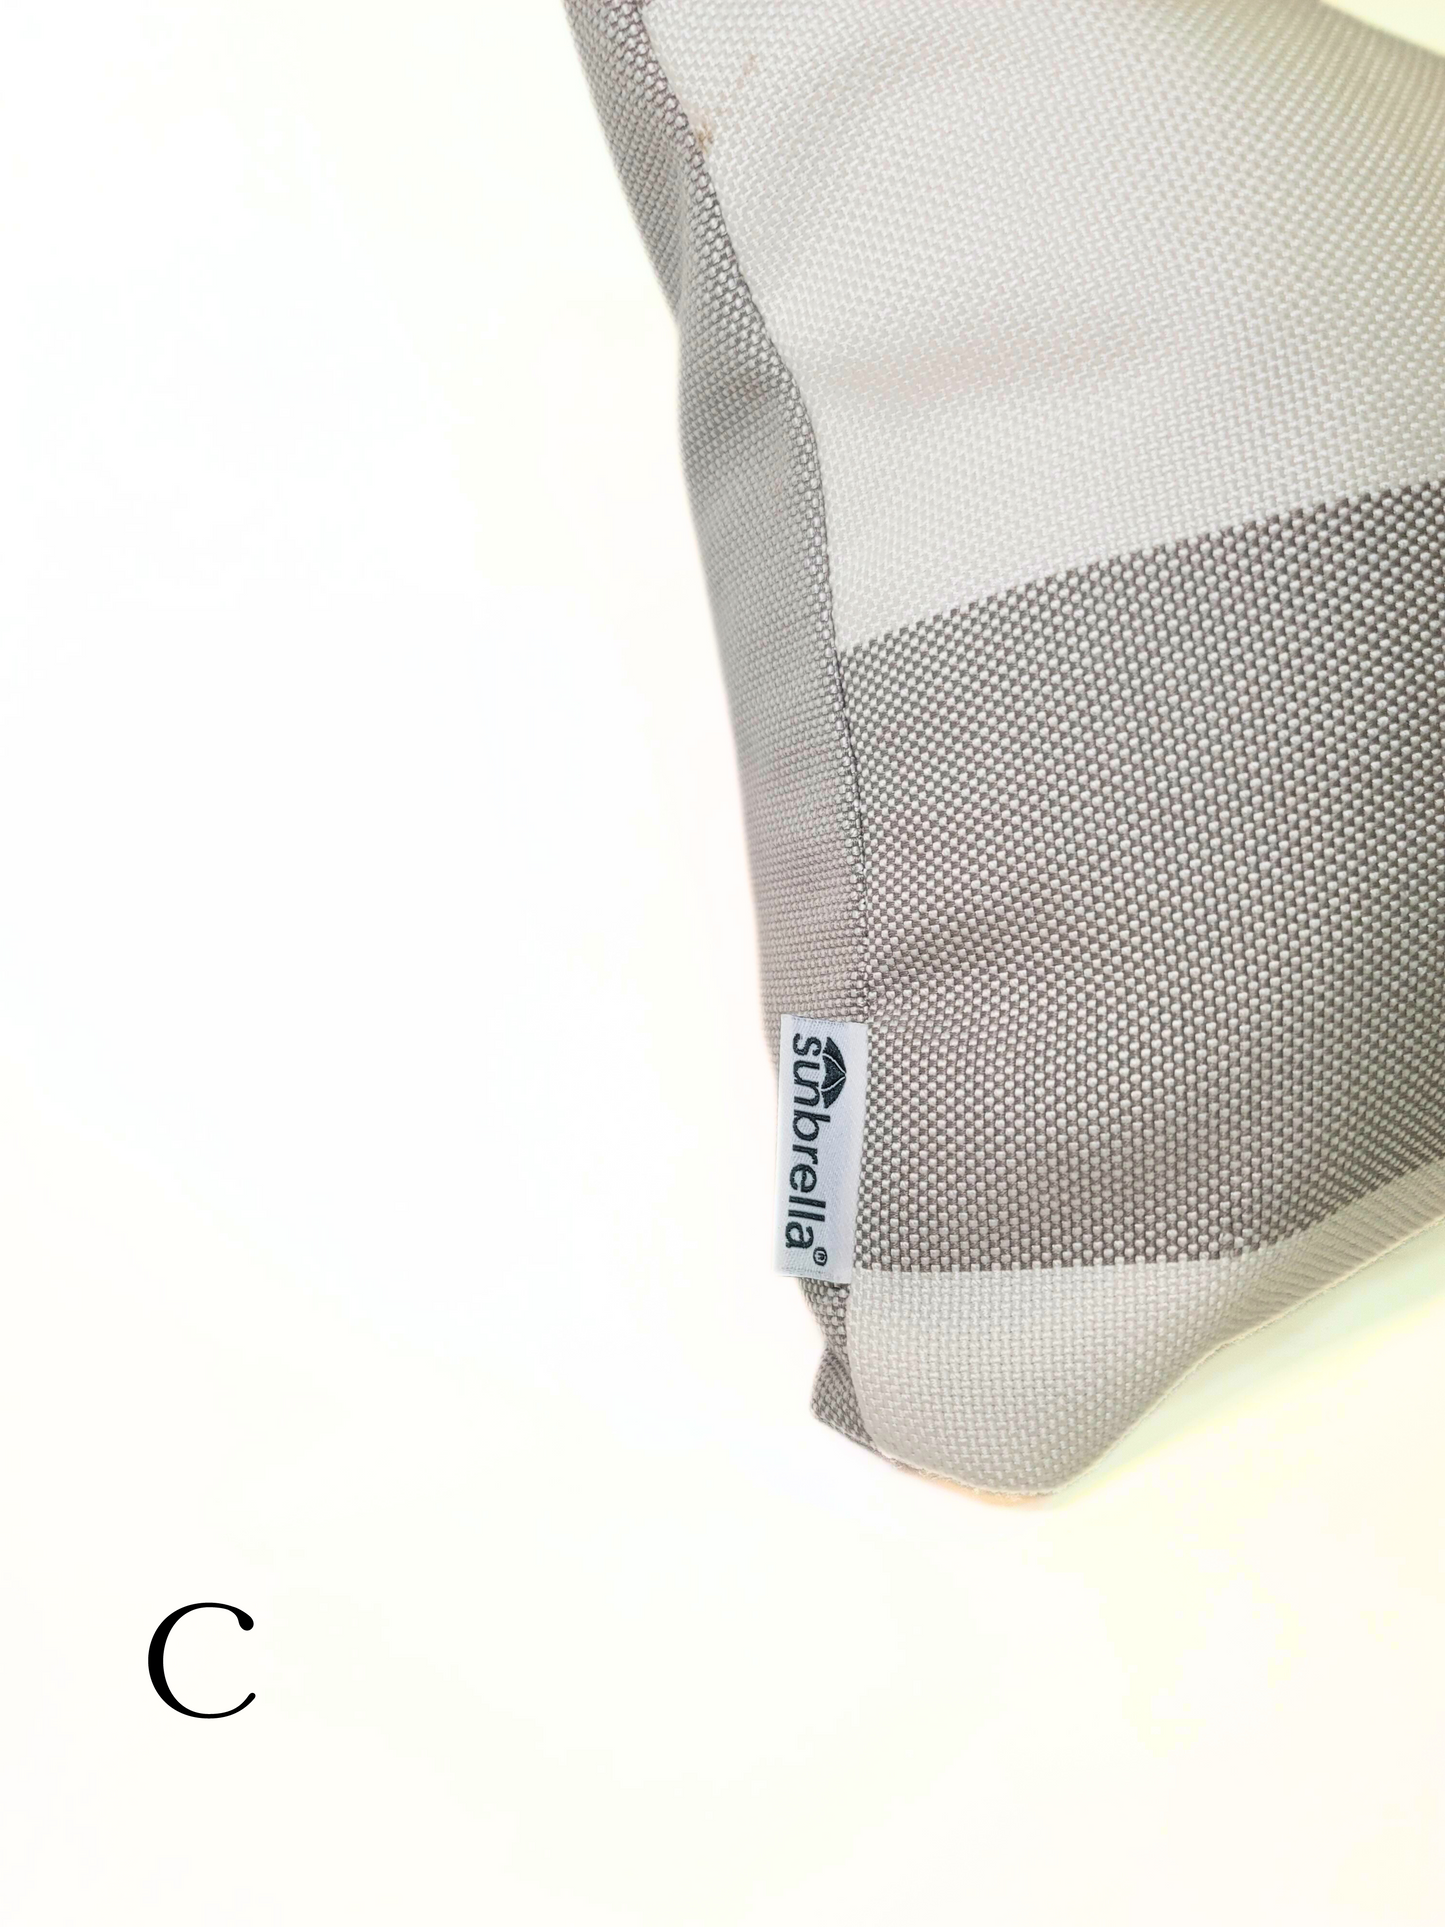 Sunbrella Premium 'Solana Seagull' Indoor/Outdoor Toss Pillow Cover